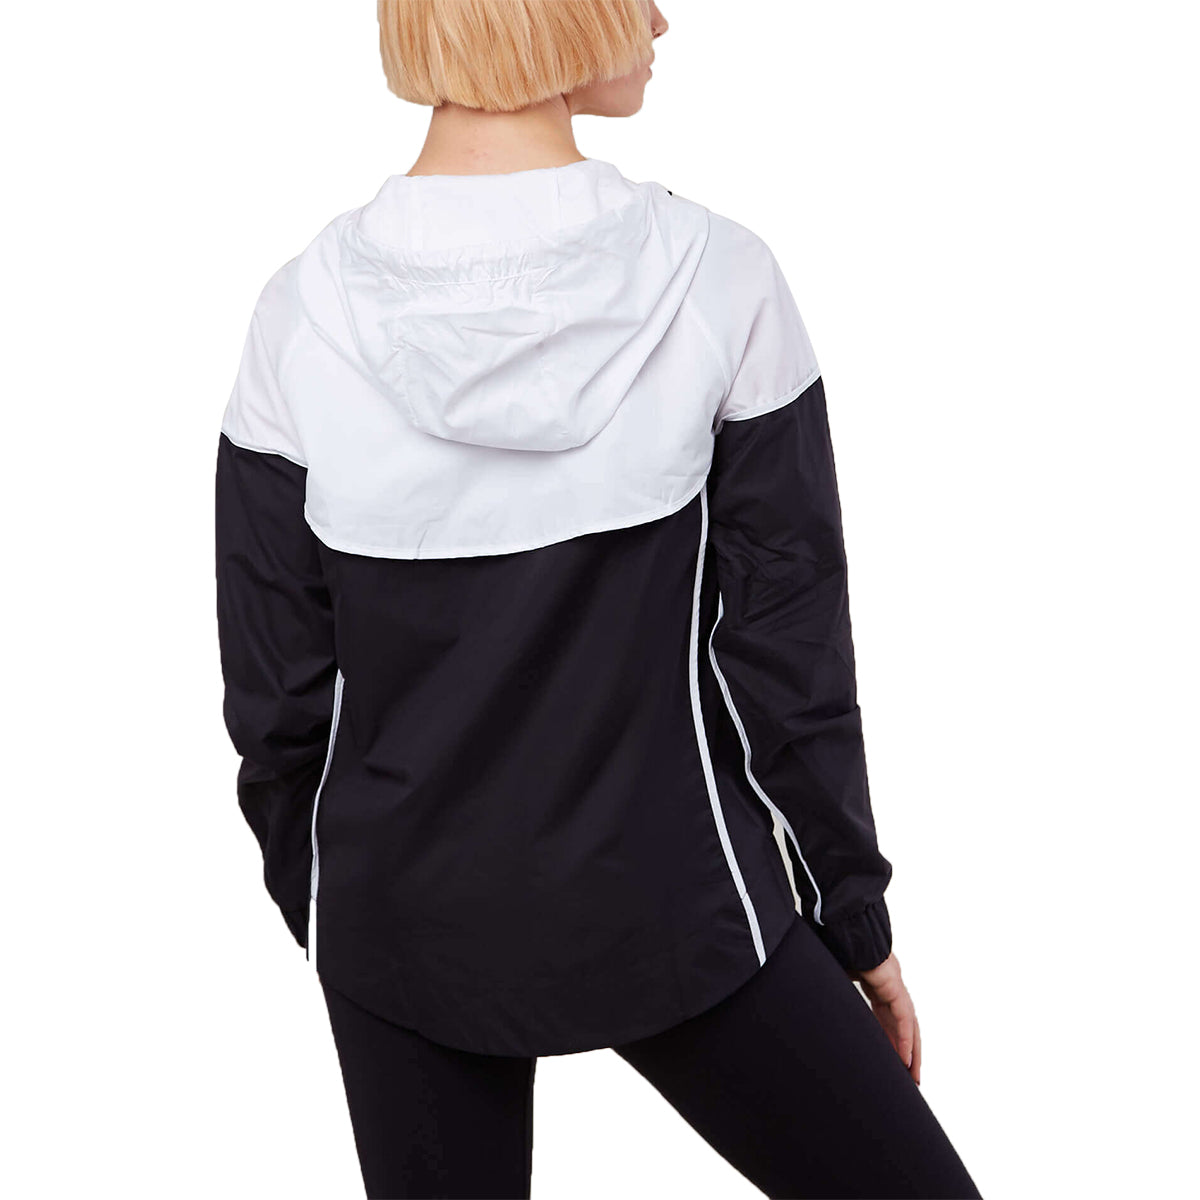 Nike Sportswear Windrunner Track Jacket Womens Style : 883495